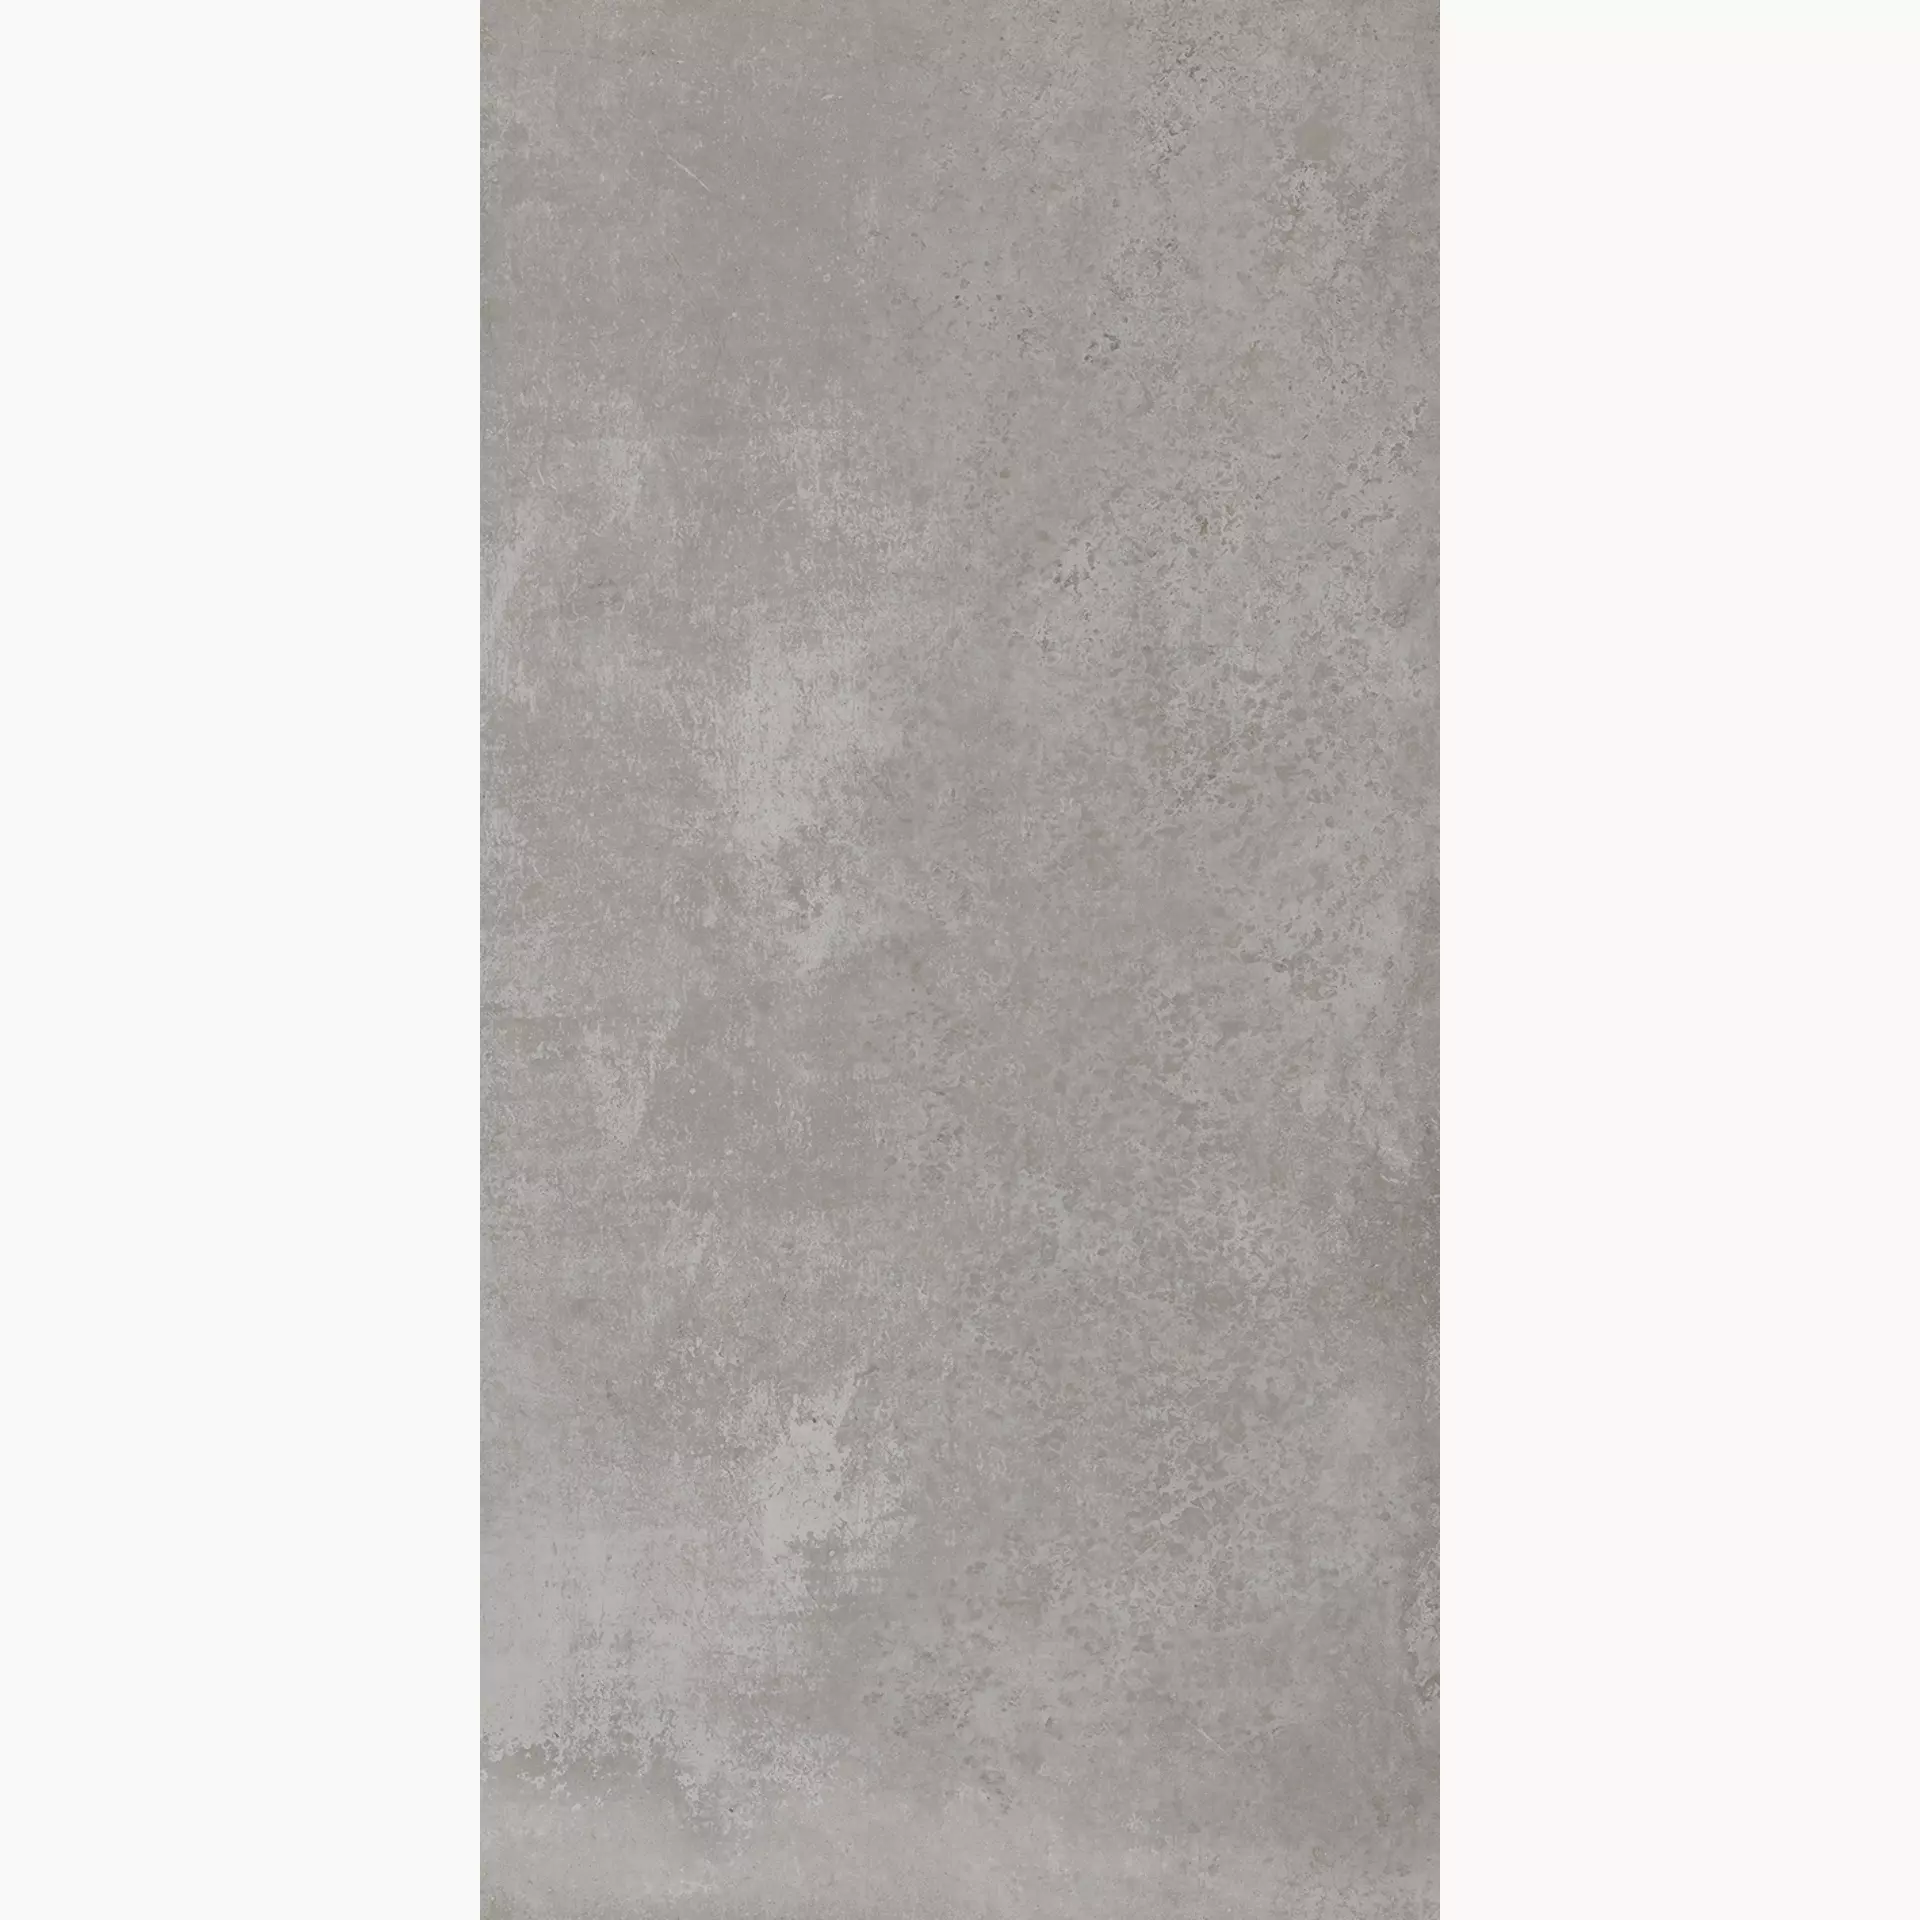 Villeroy & Boch Atlanta Concrete Grey Matt 2730-AL60 60x120cm rectified 10mm